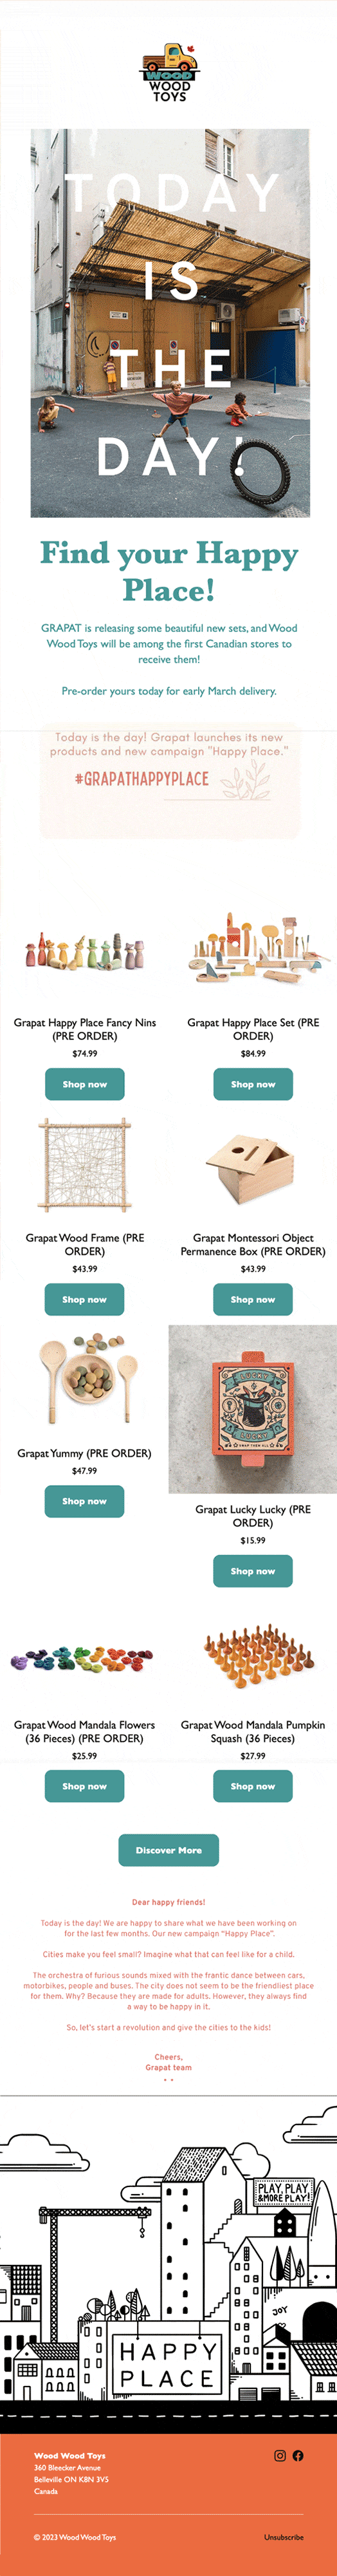 E-mail présentant de nouveaux arrivages de jolis jouets en bois dans la boutique en ligne de Wood Wood Toys.